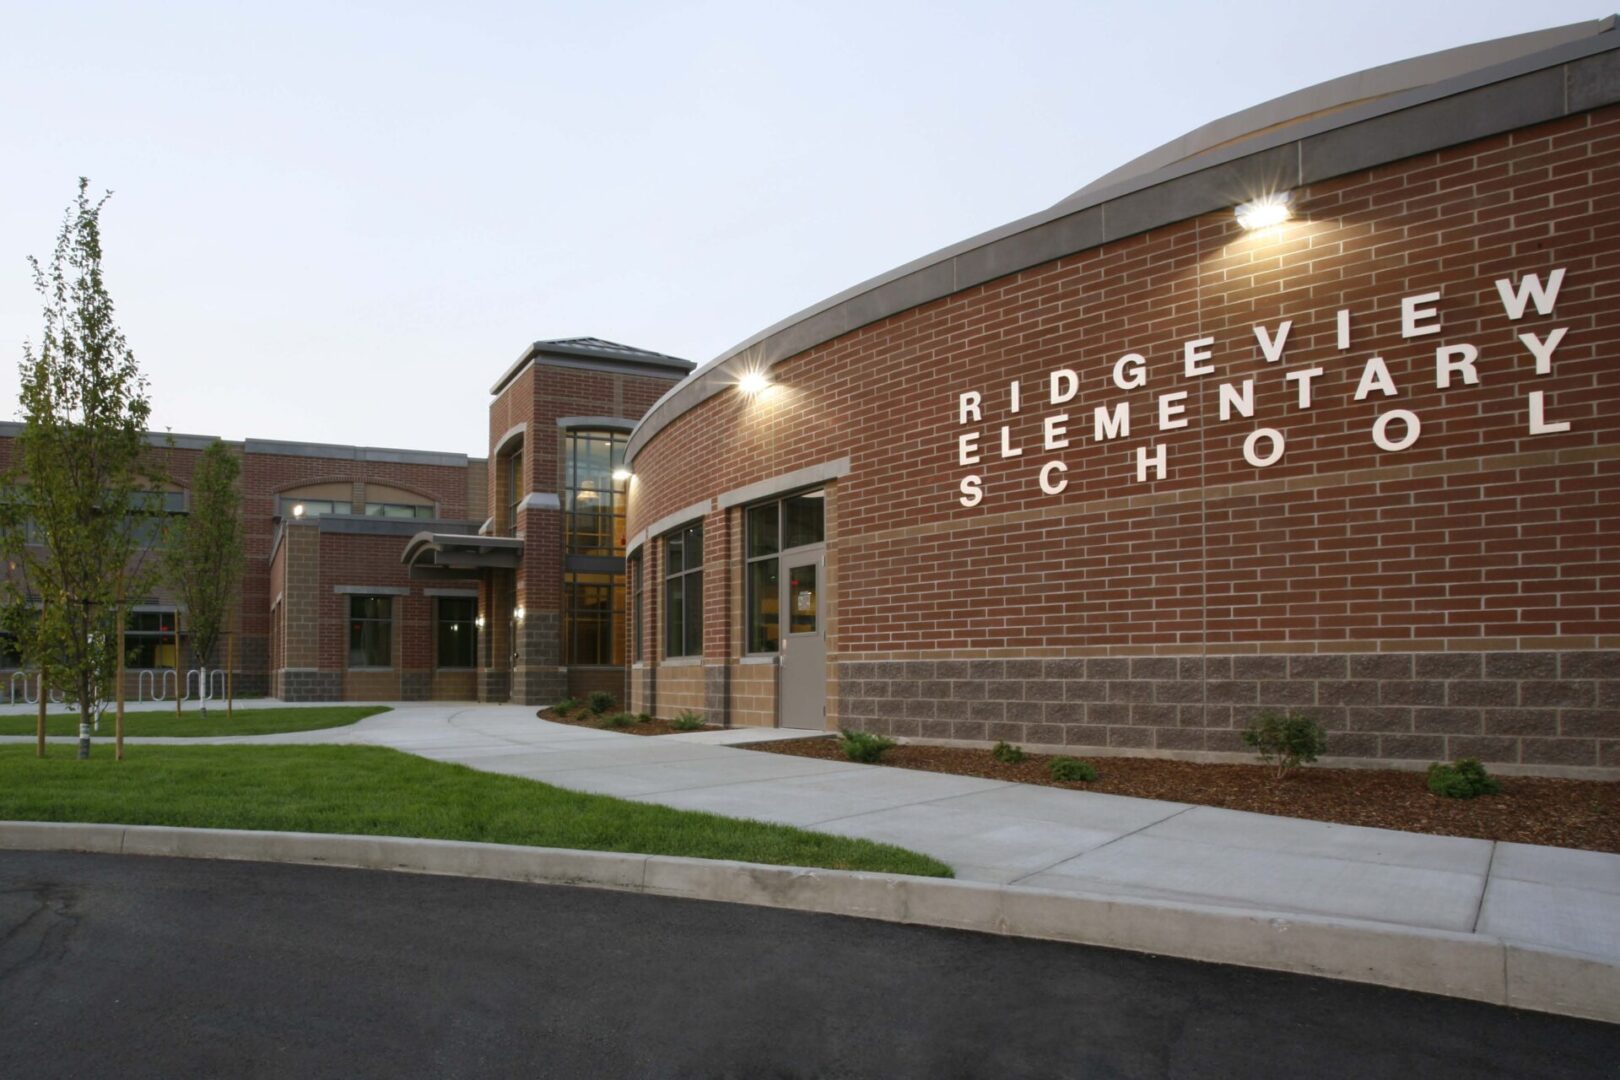 Ridgeview Elementary